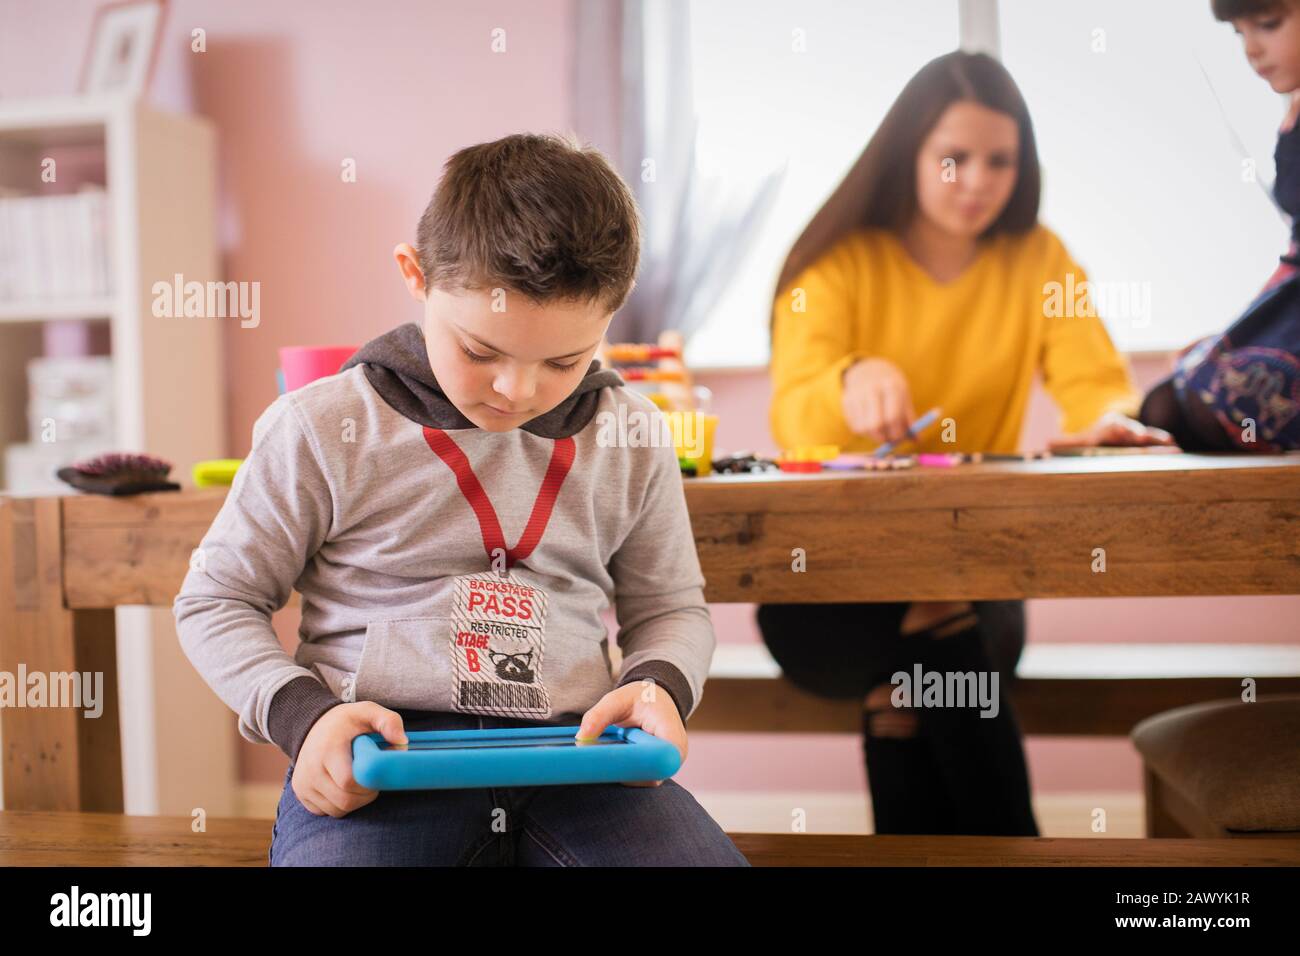 Garçon avec syndrome De Down utilisant une tablette numérique dans la salle à manger Banque D'Images